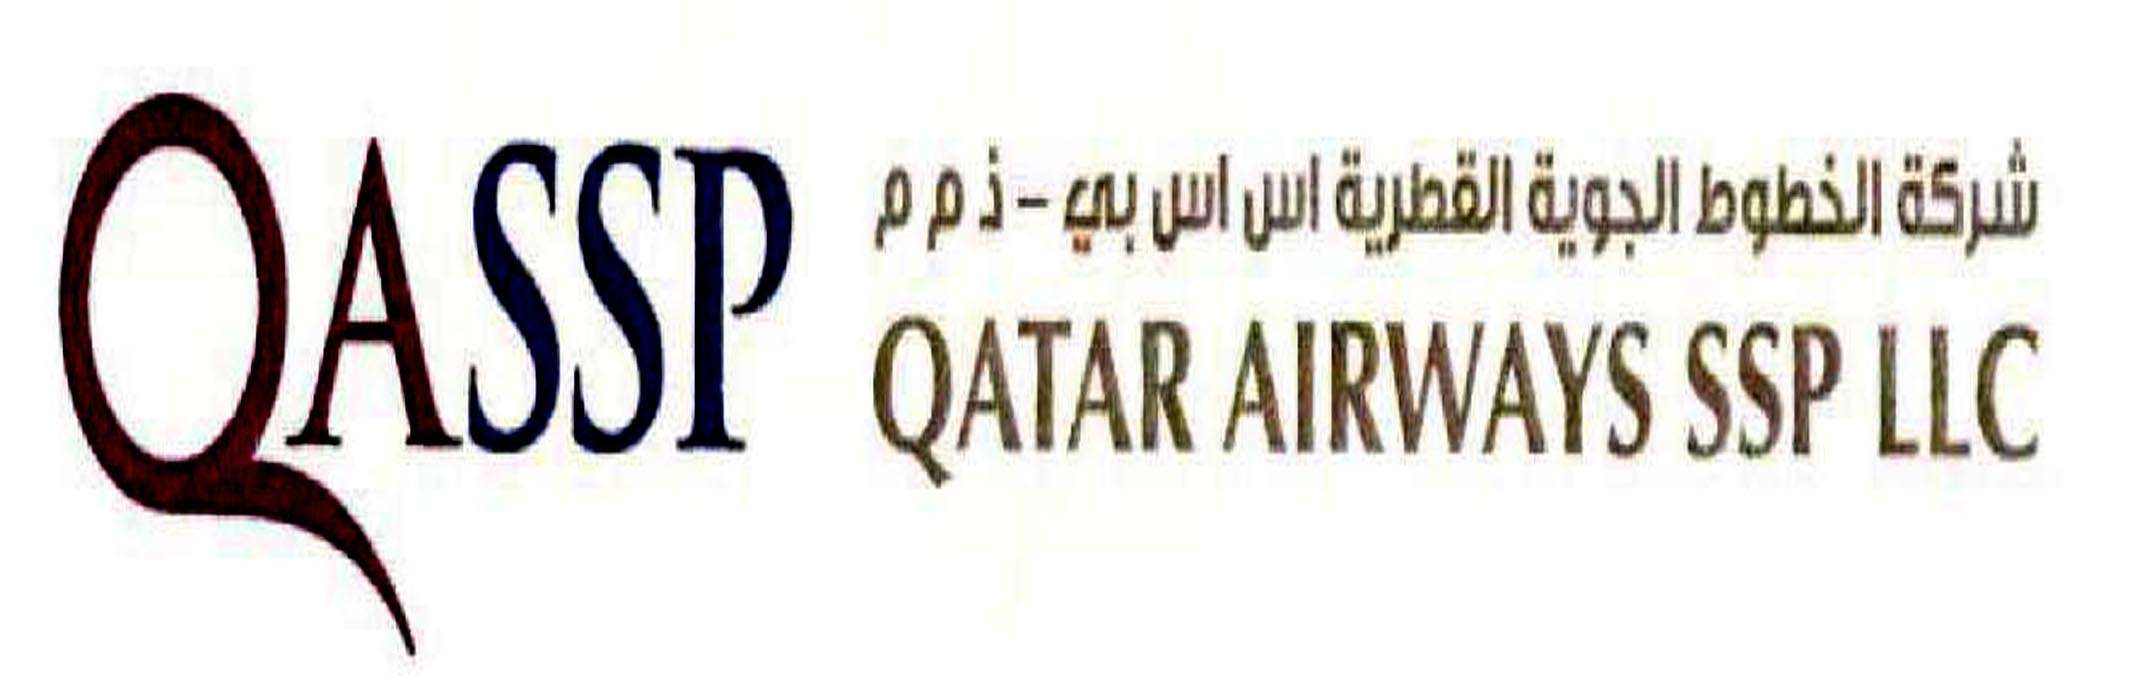 Qatar Airways SSP LLC